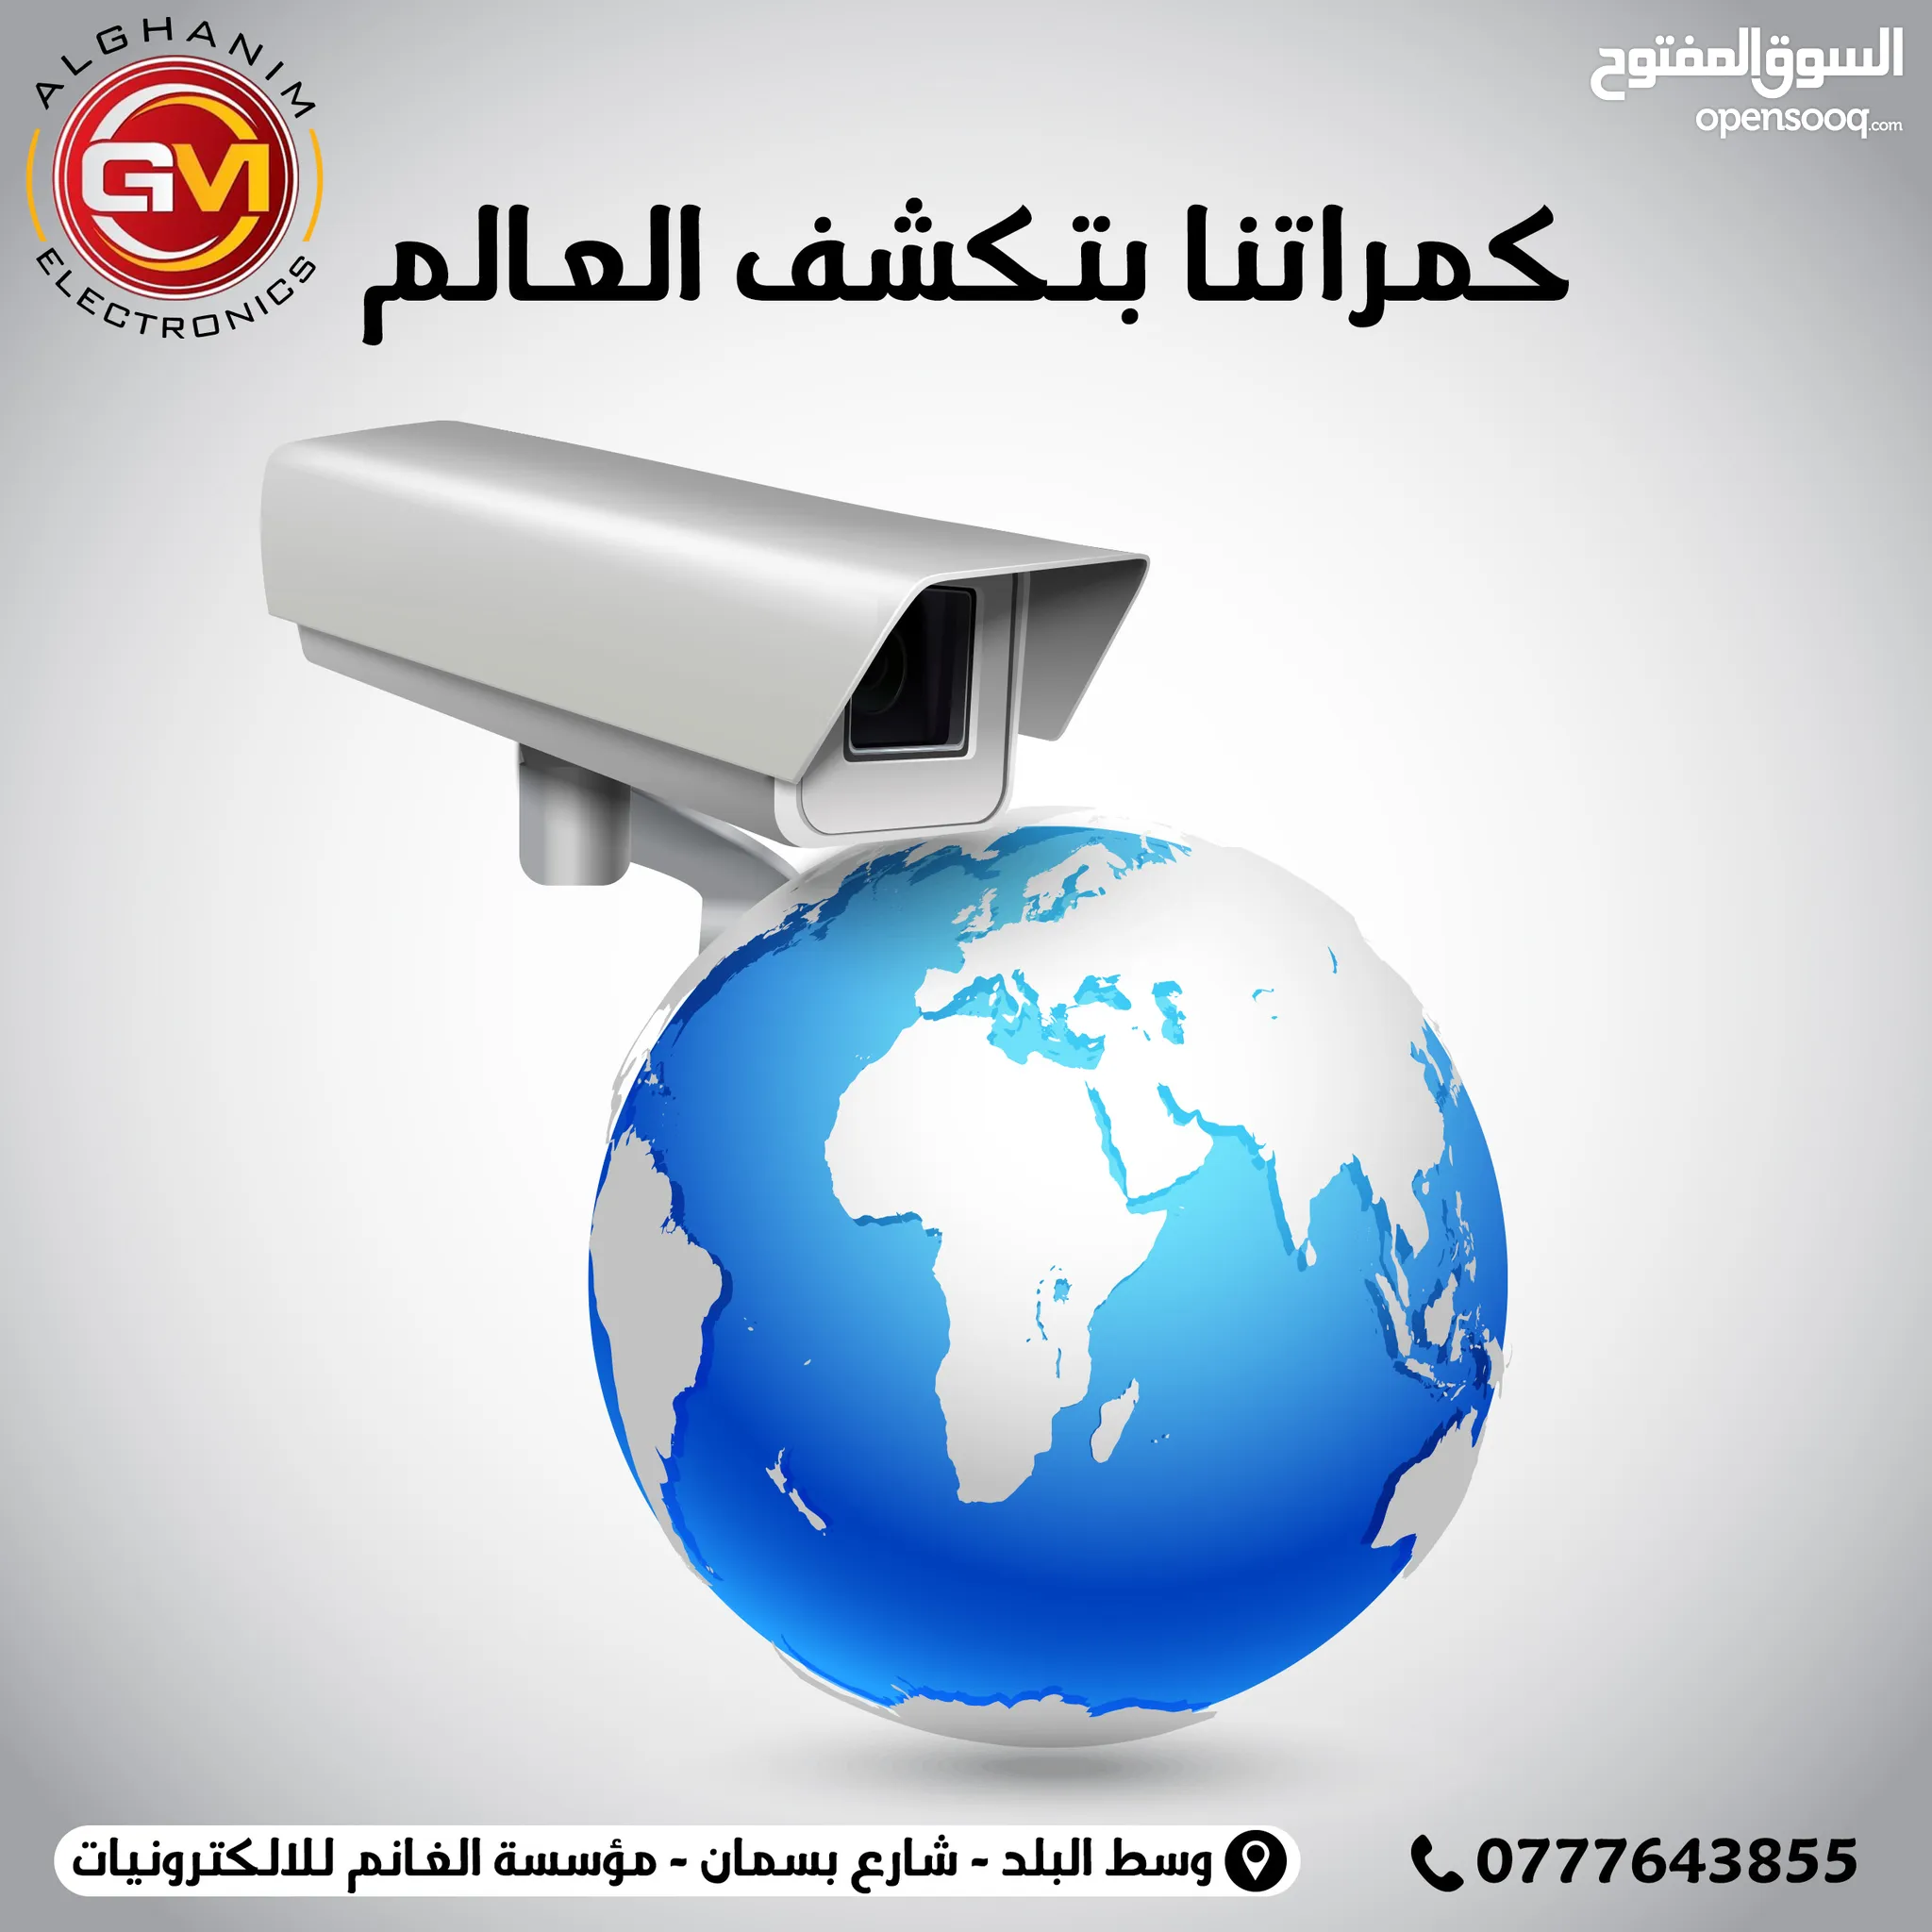 الكترونيات : أنظمة حماية ومراقبة : (صفحة 10) : عمان | السوق المفتوح